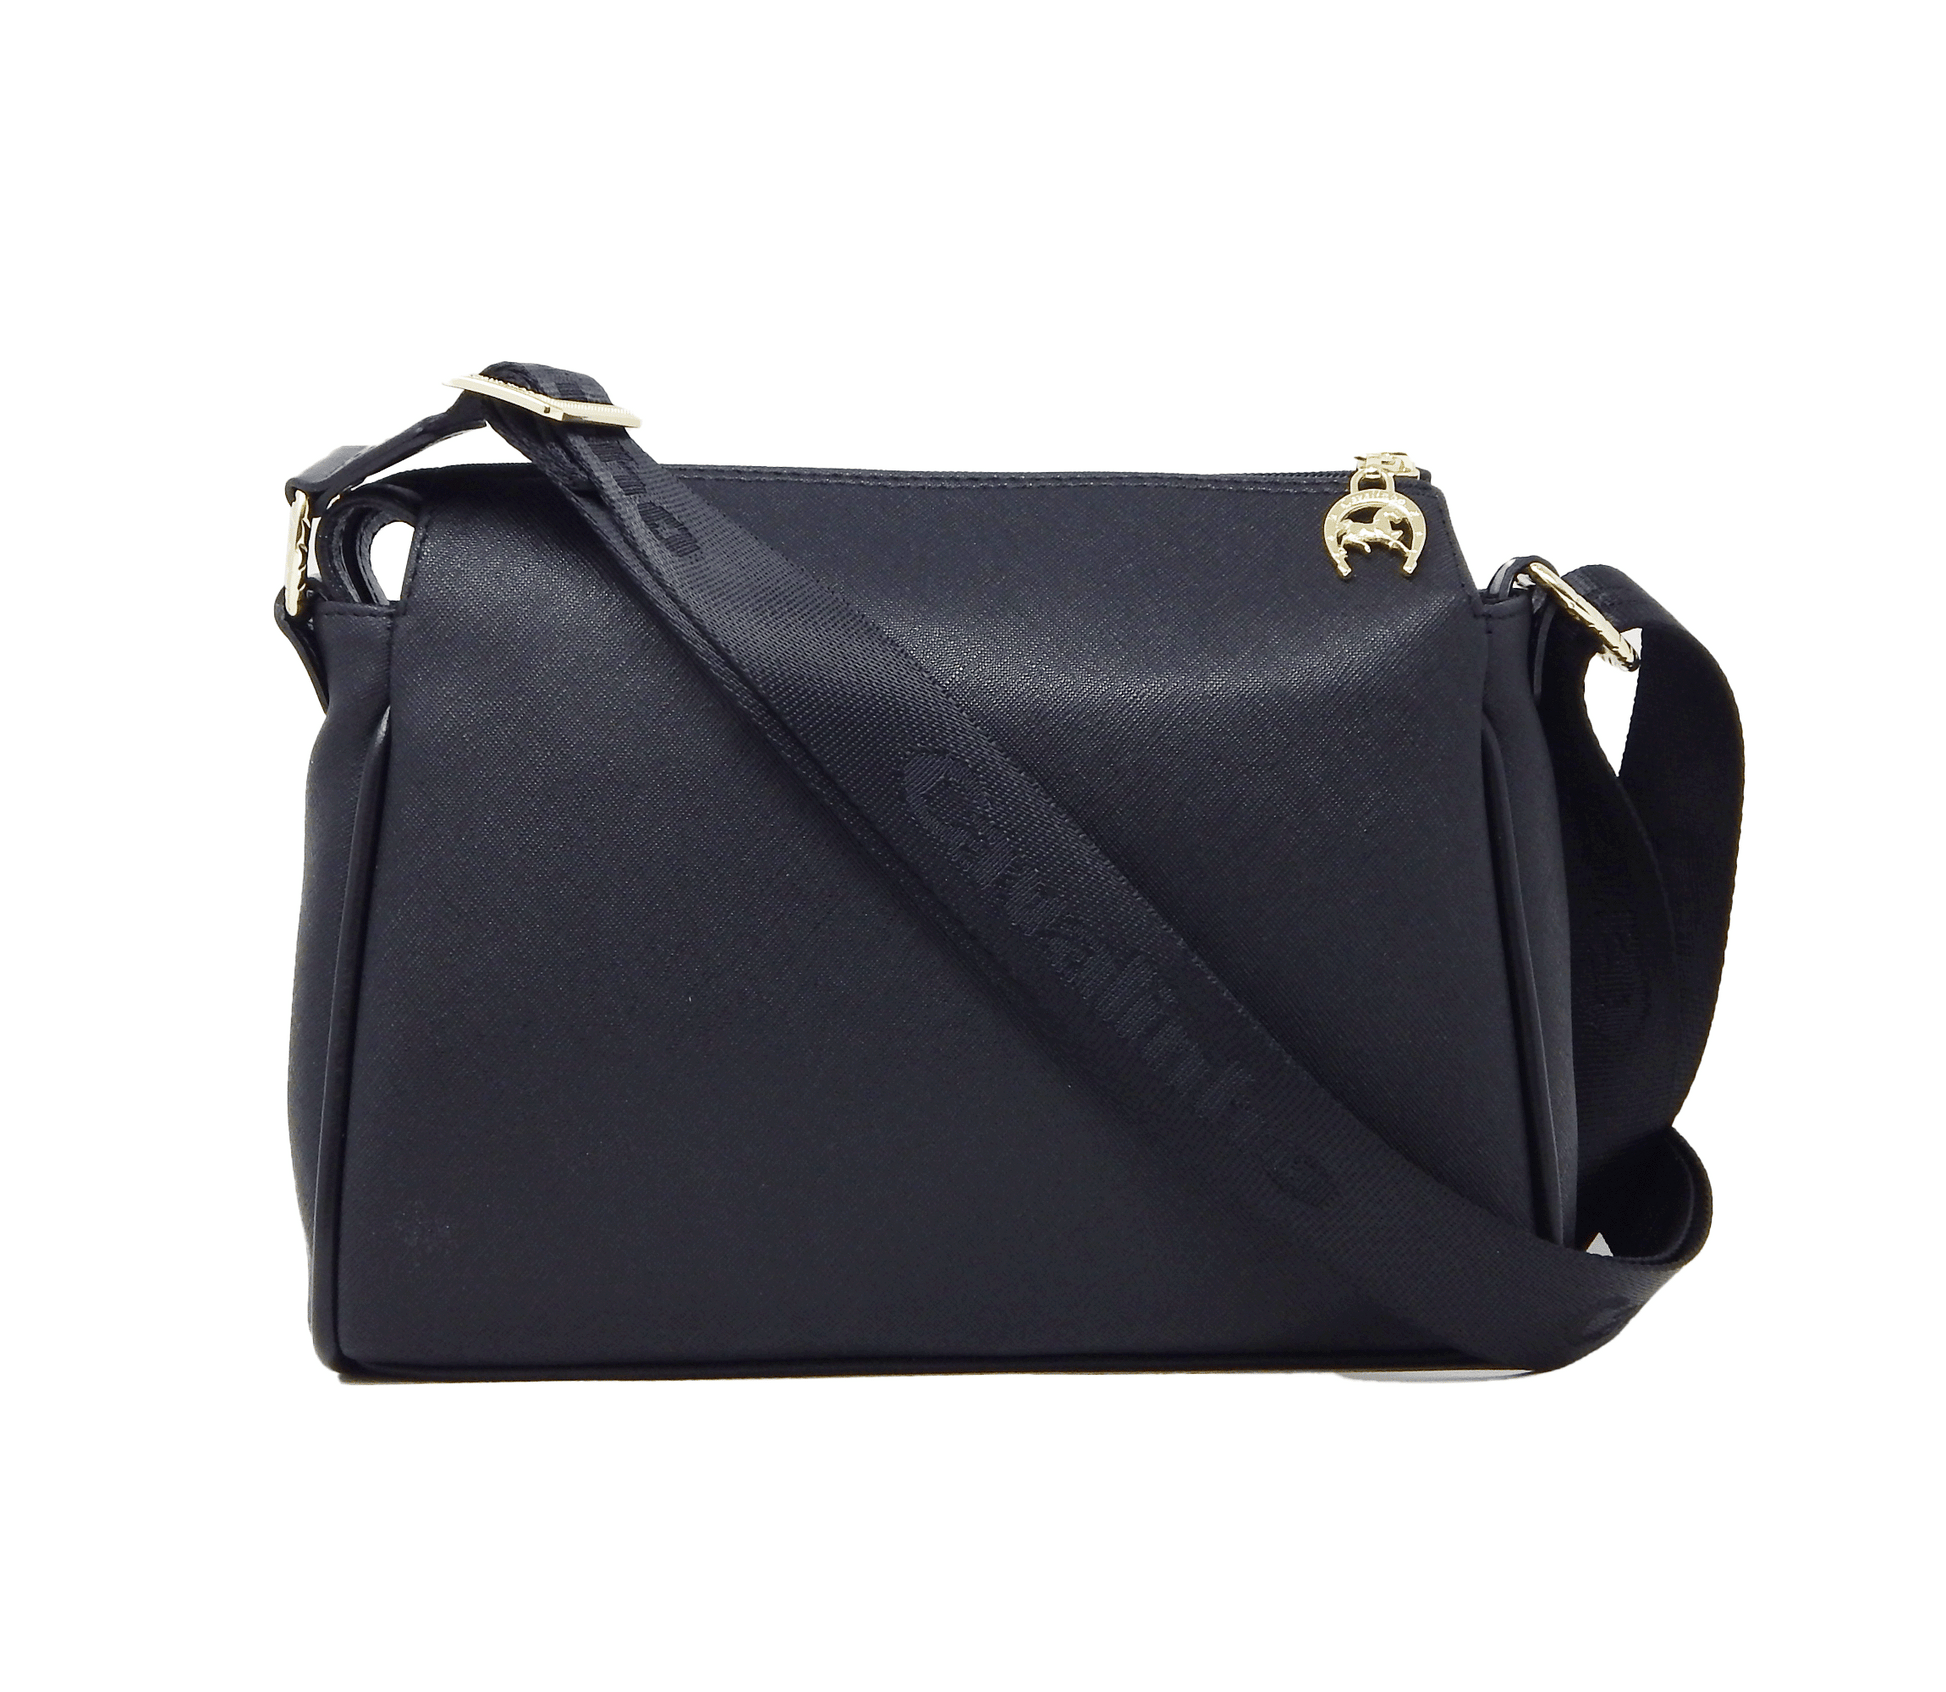 Cavalinho Charming Crossbody Bag - Black - 18470344.01_3